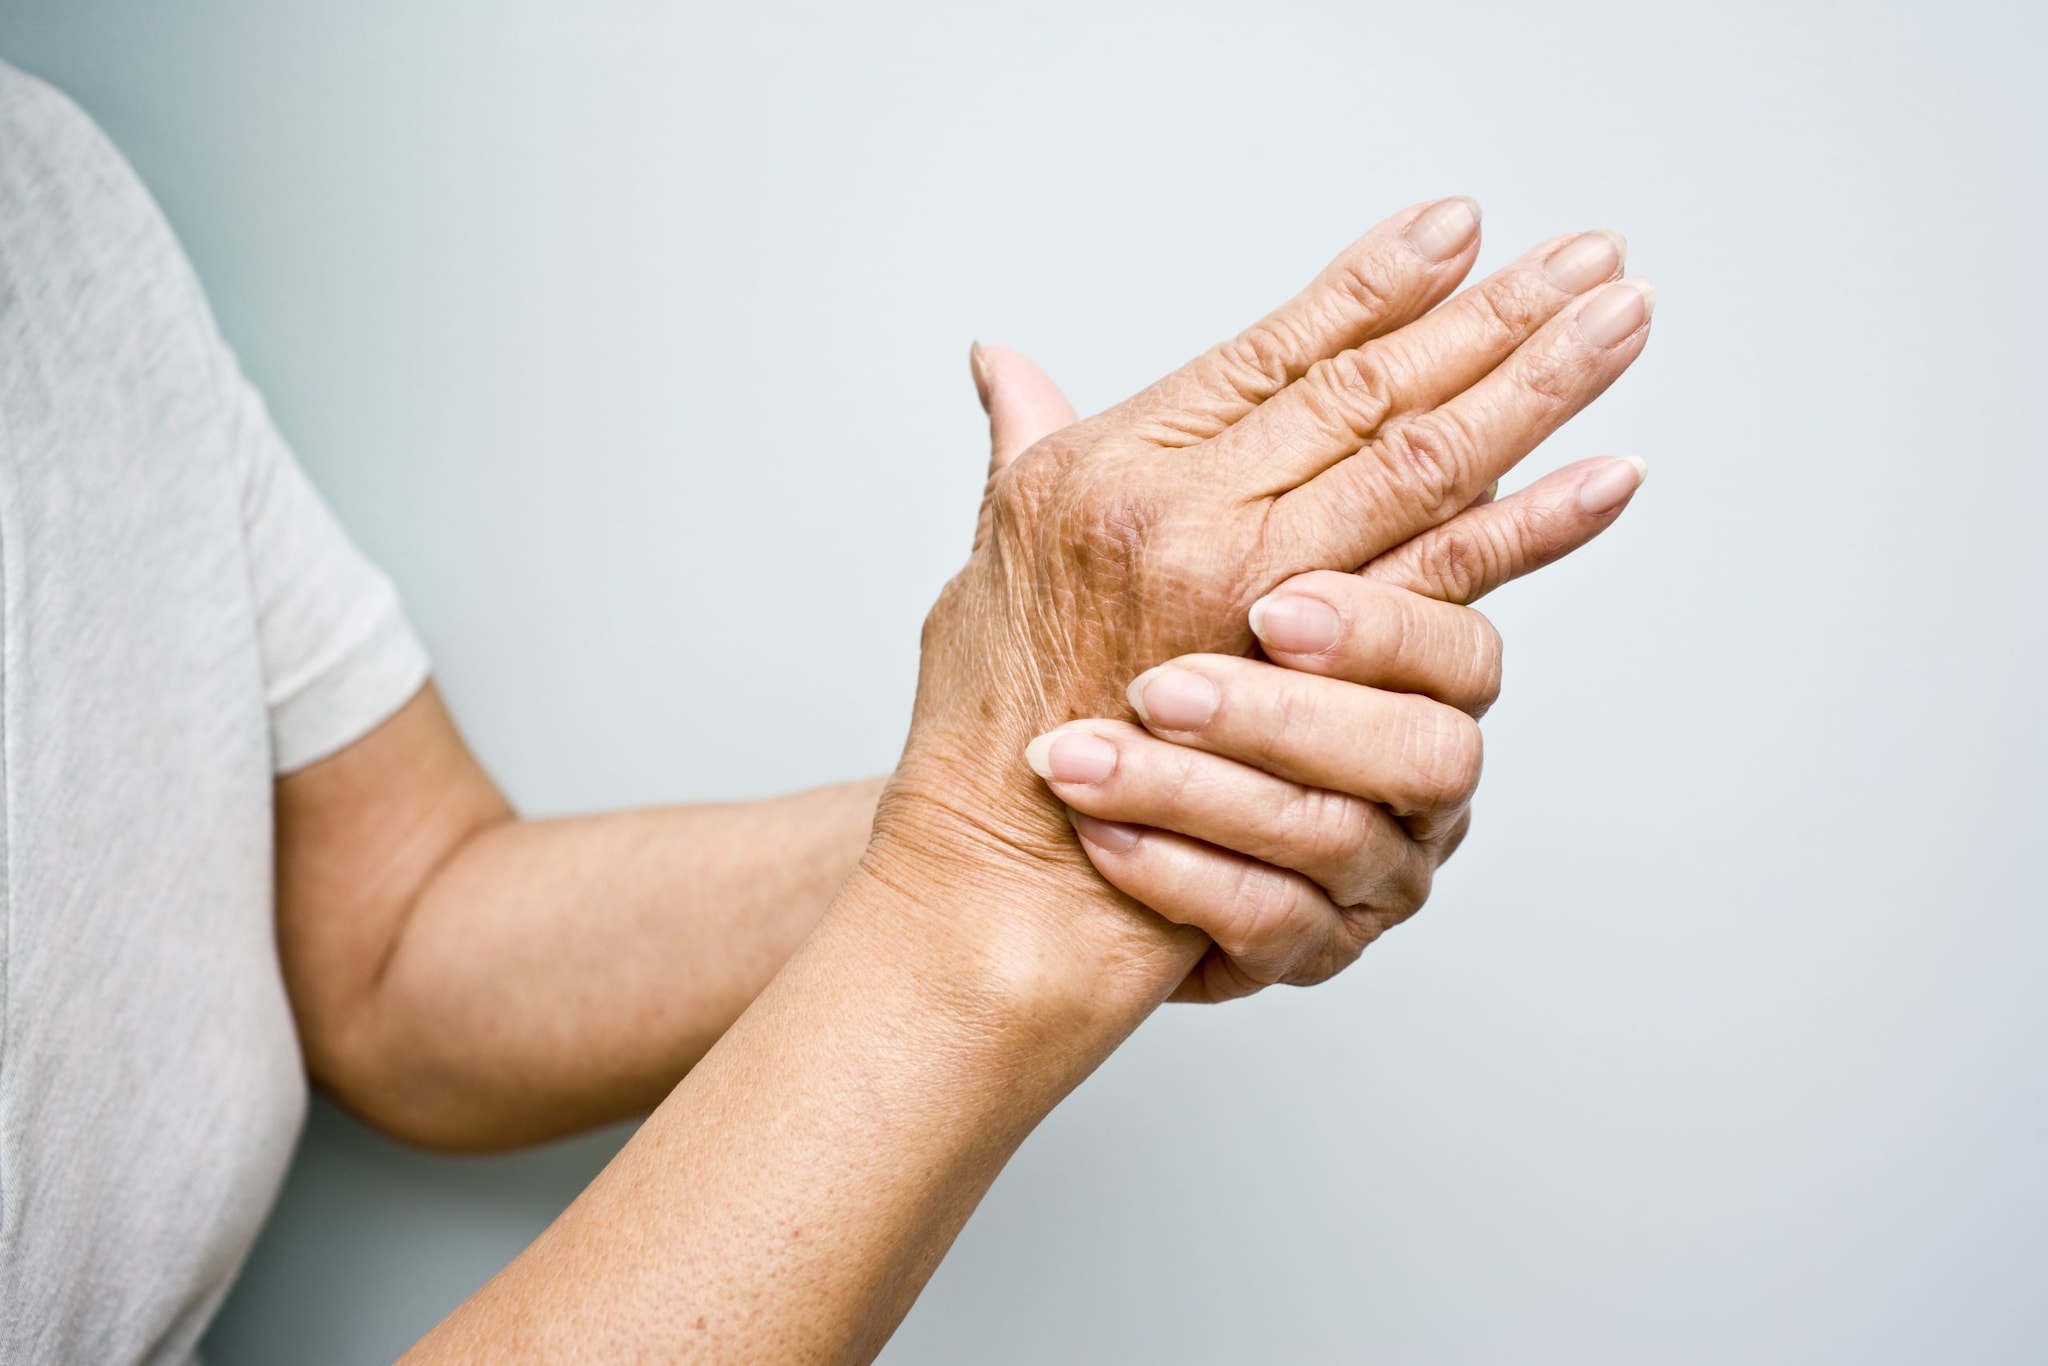 Elderly woman with Arthritis in her hands